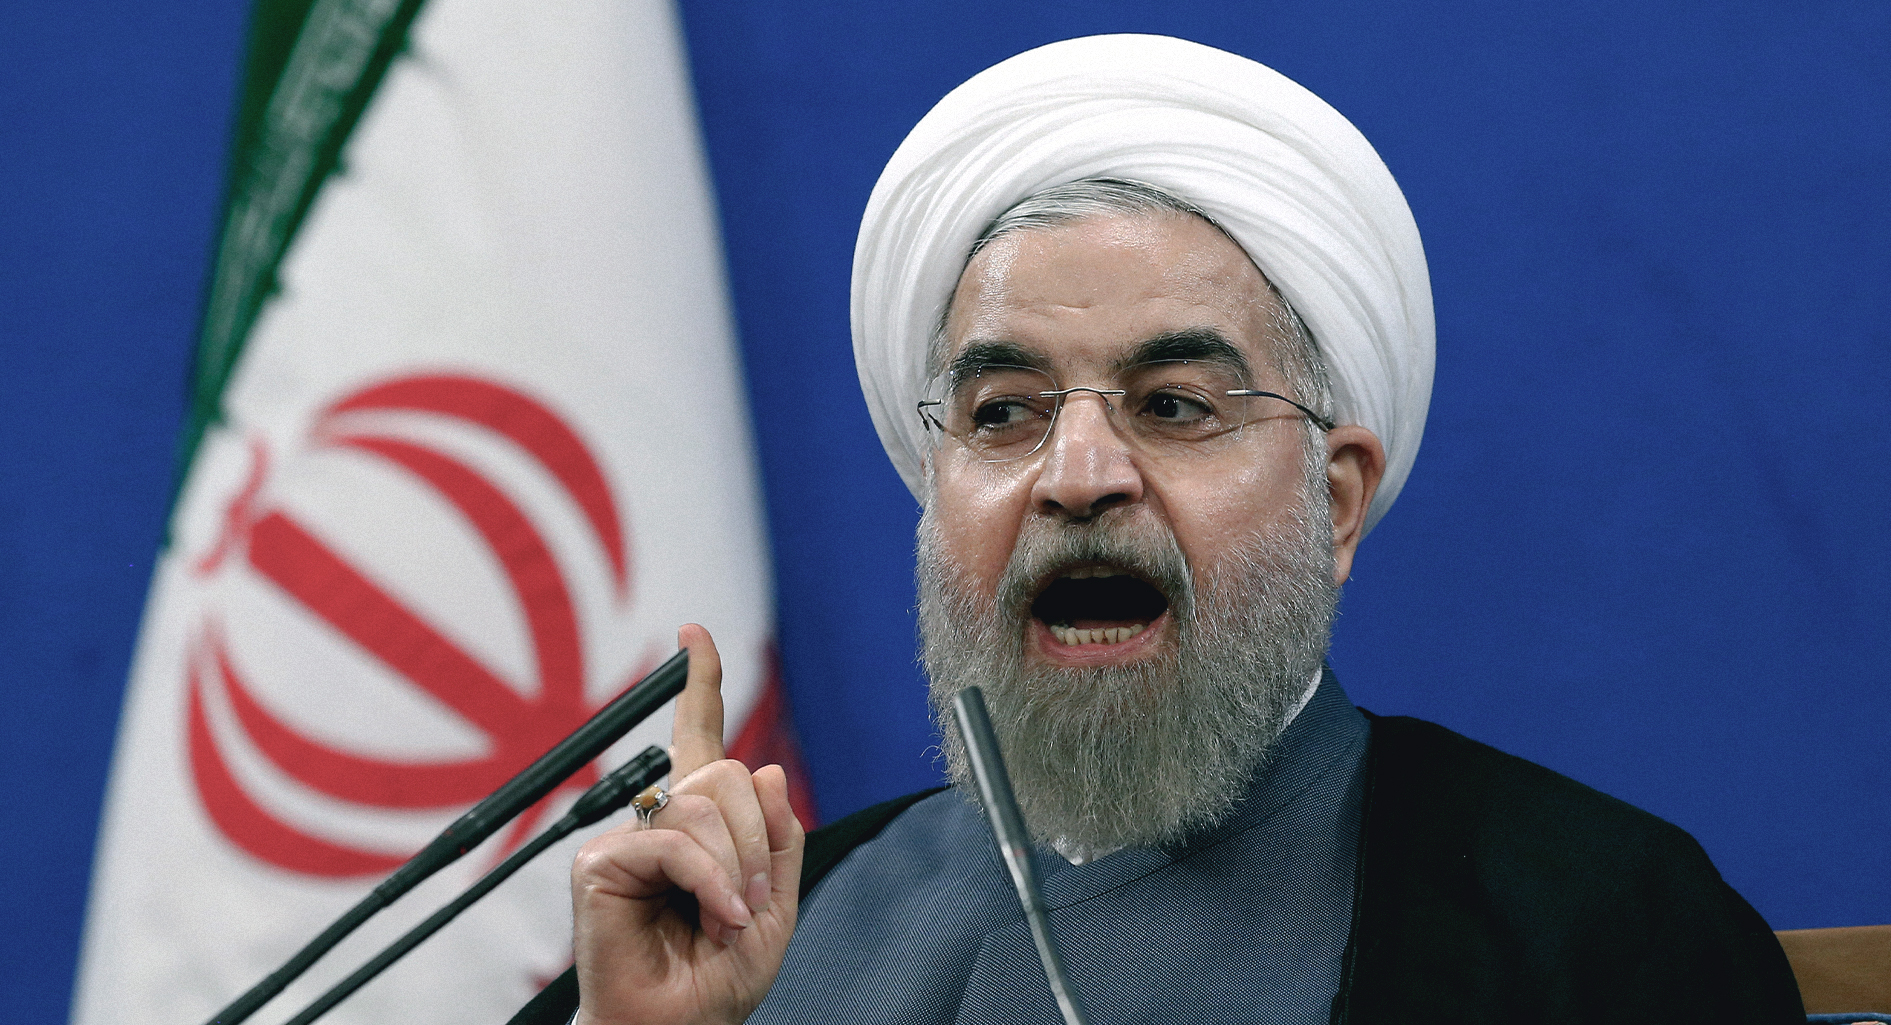 صورة روحاني يؤكد أن المظاهرات مؤامرة لإلهائه عن التعامل مع لبنان والعراق بمسائل محلية هامشية